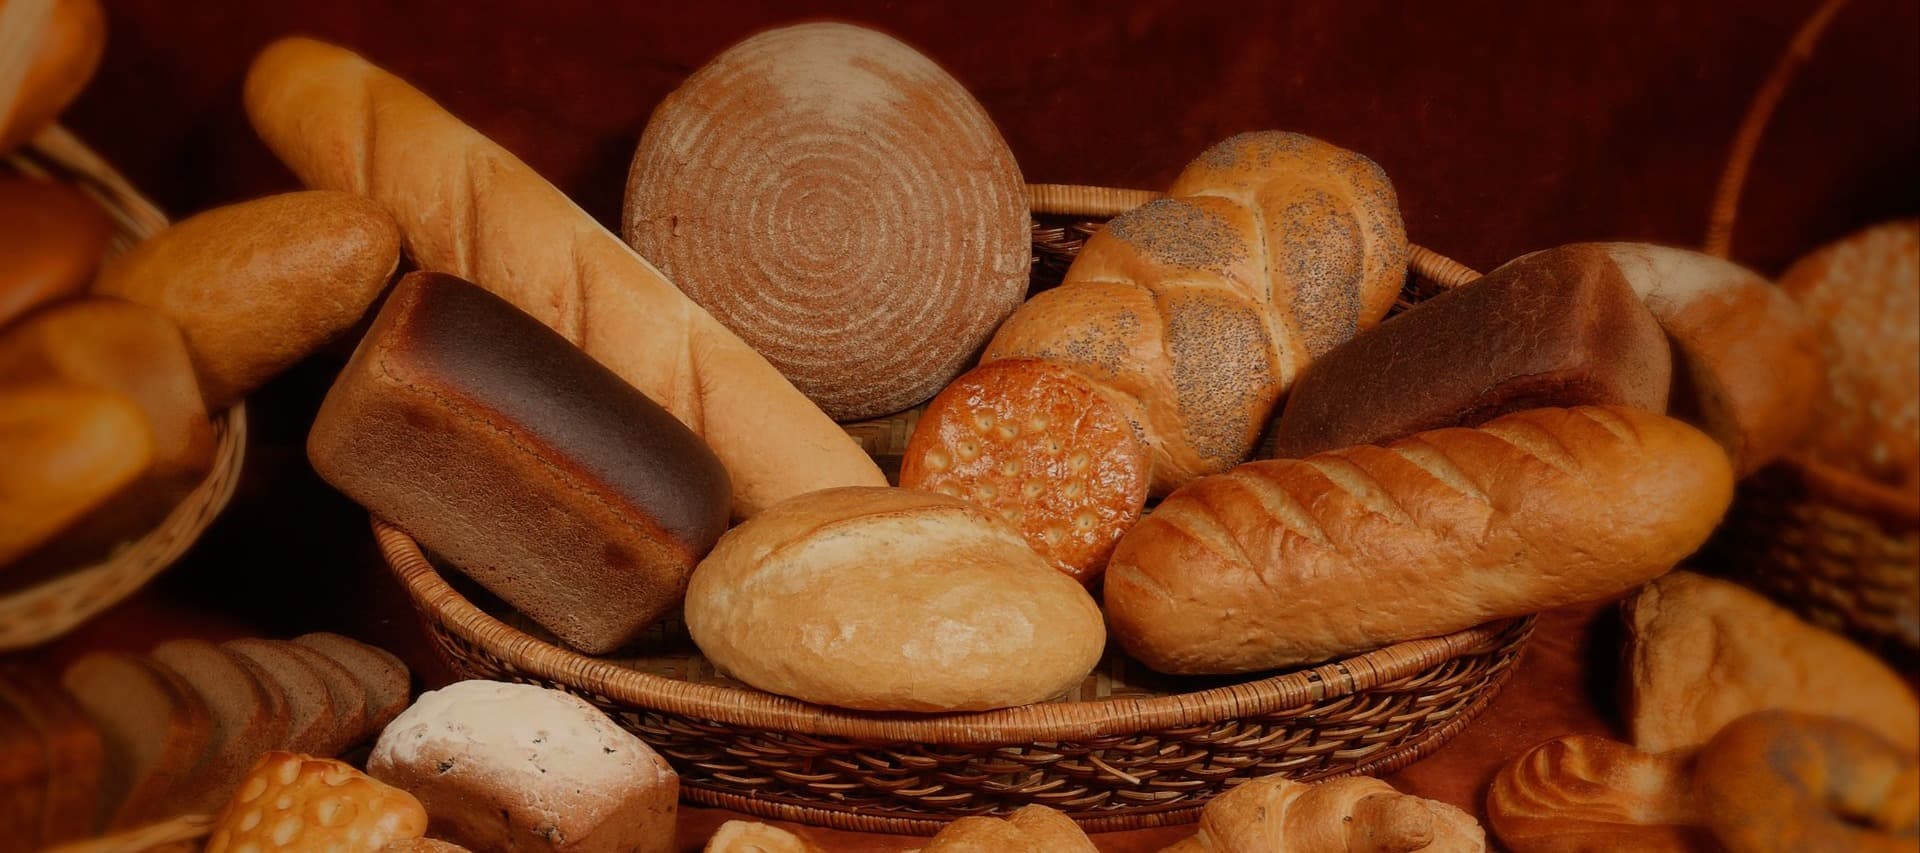 Фото новости: "Холдинг «Коломенский» выкупил одного из старейших московских производителей хлеба"